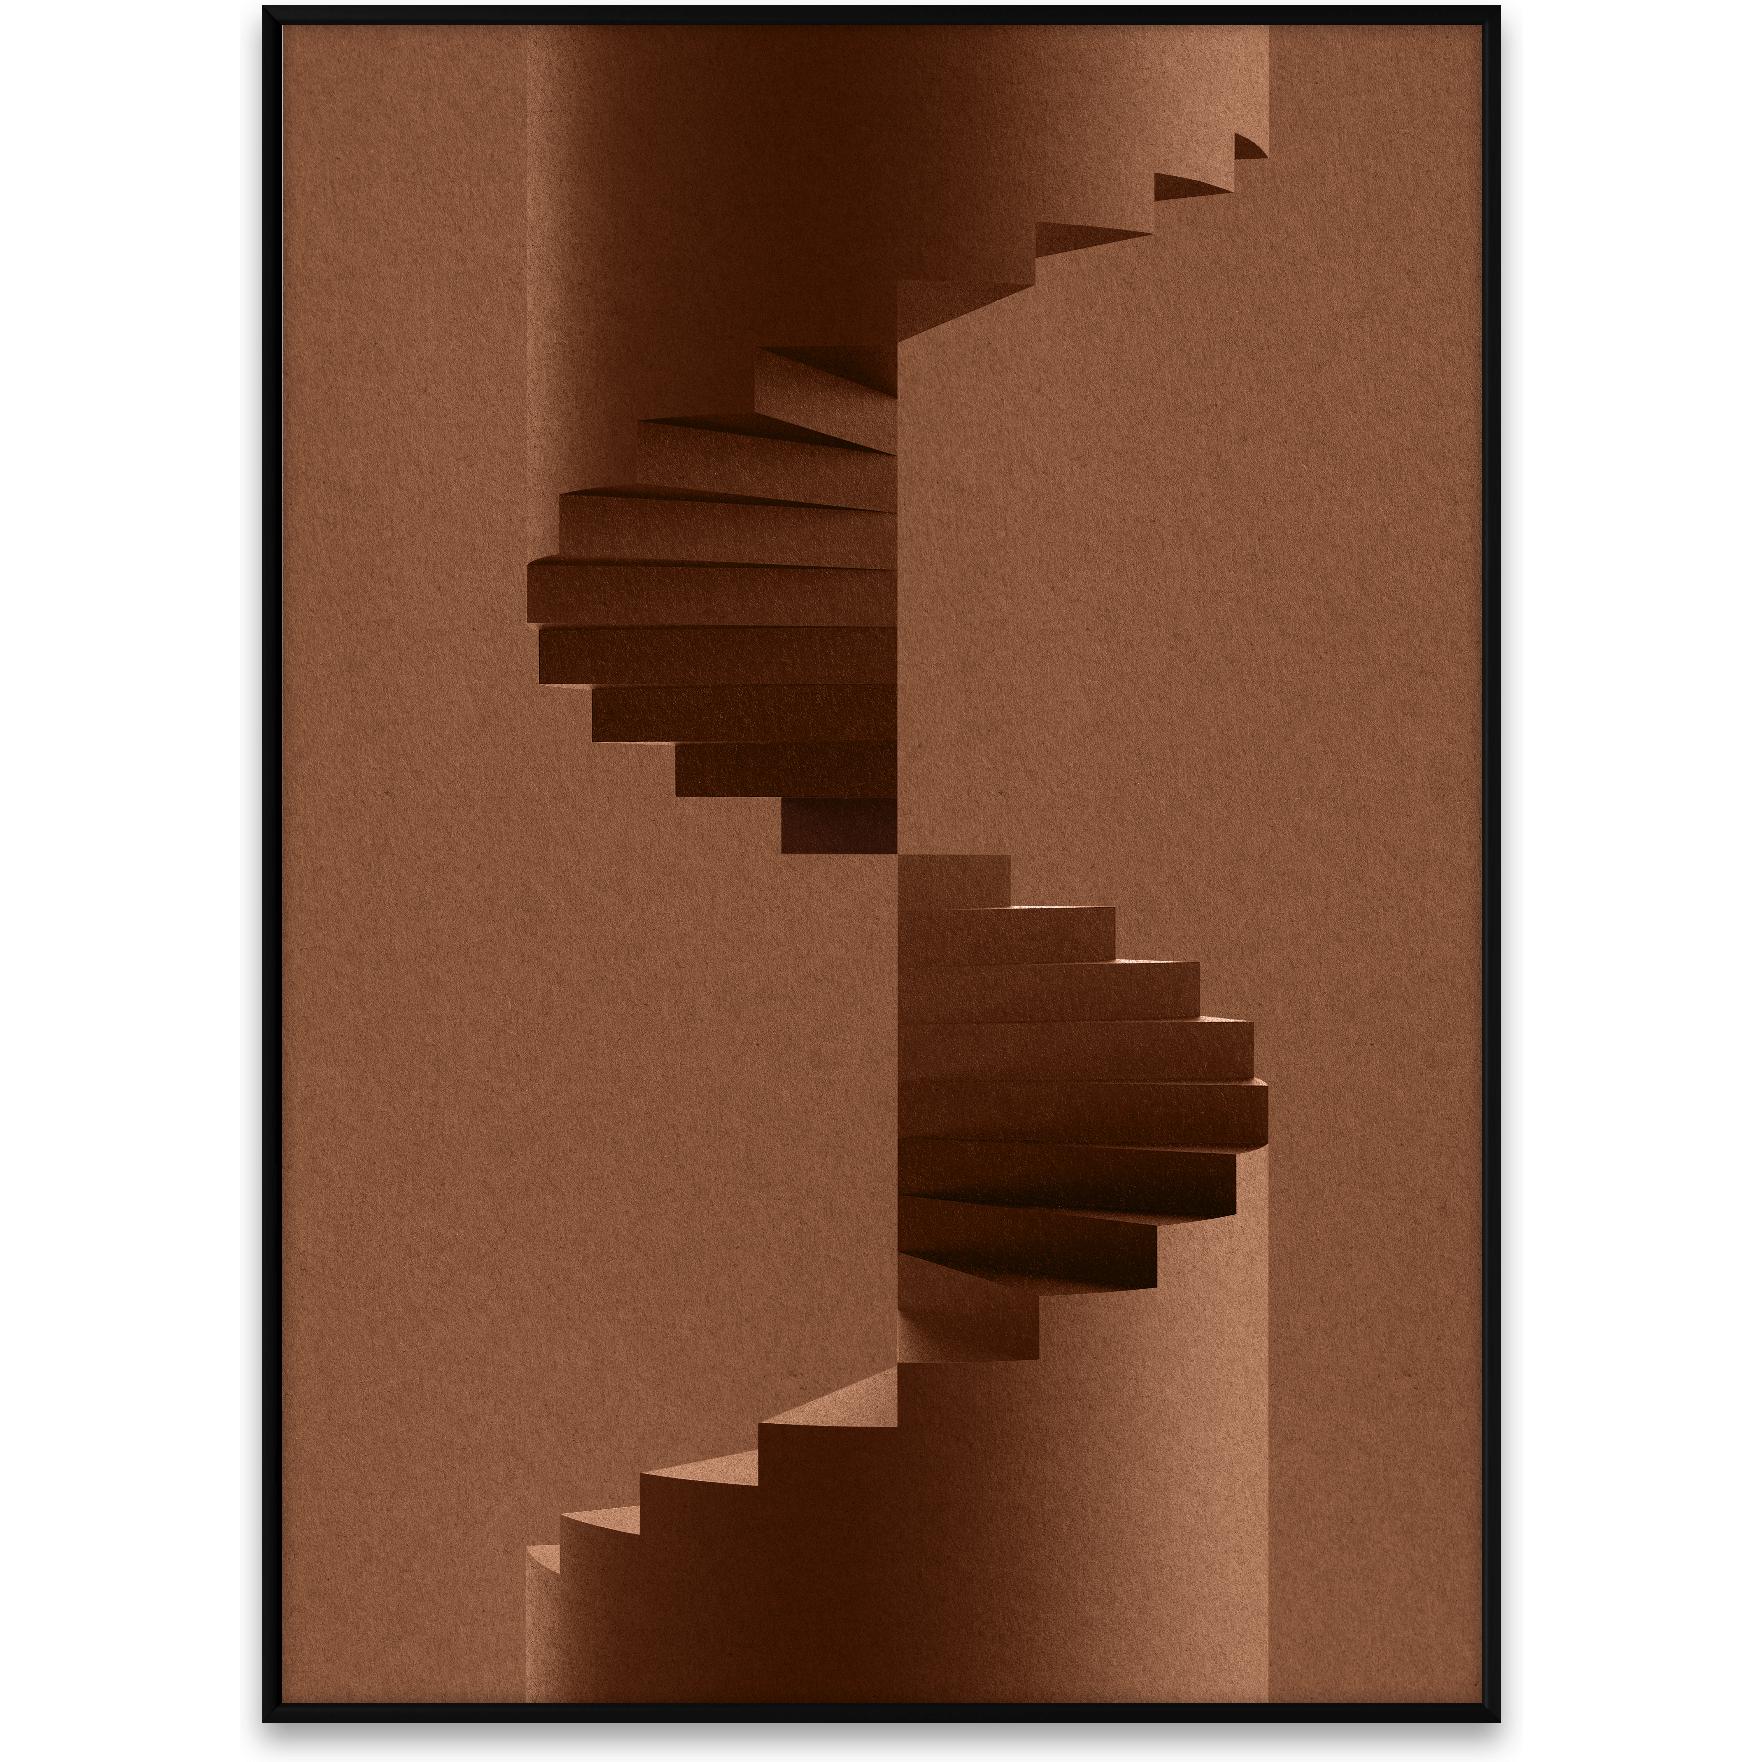 Collective de papel El póster del pilar, 30x40 cm